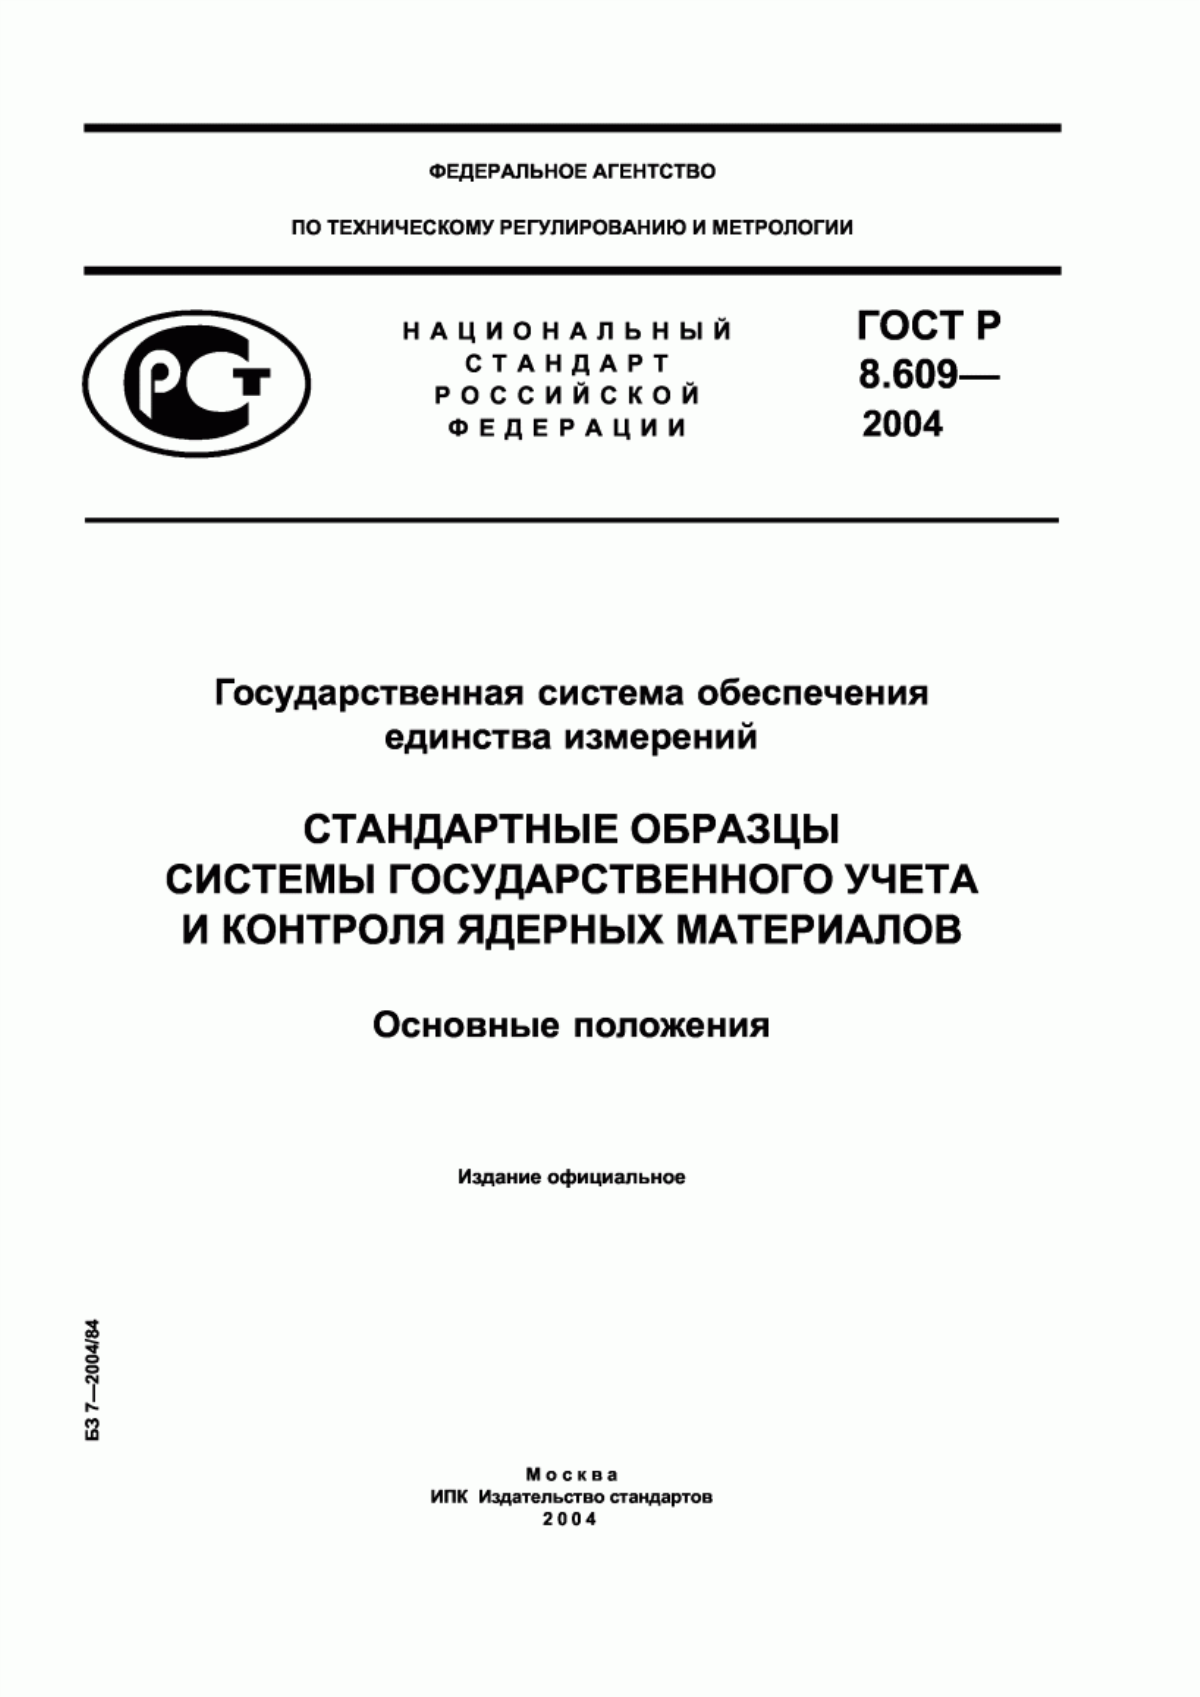 ГОСТ Р 8.609-2004 Государственная система обеспечения единства измерений. Стандартные образцы системы государственного учета и контроля ядерных материалов. Основные положения